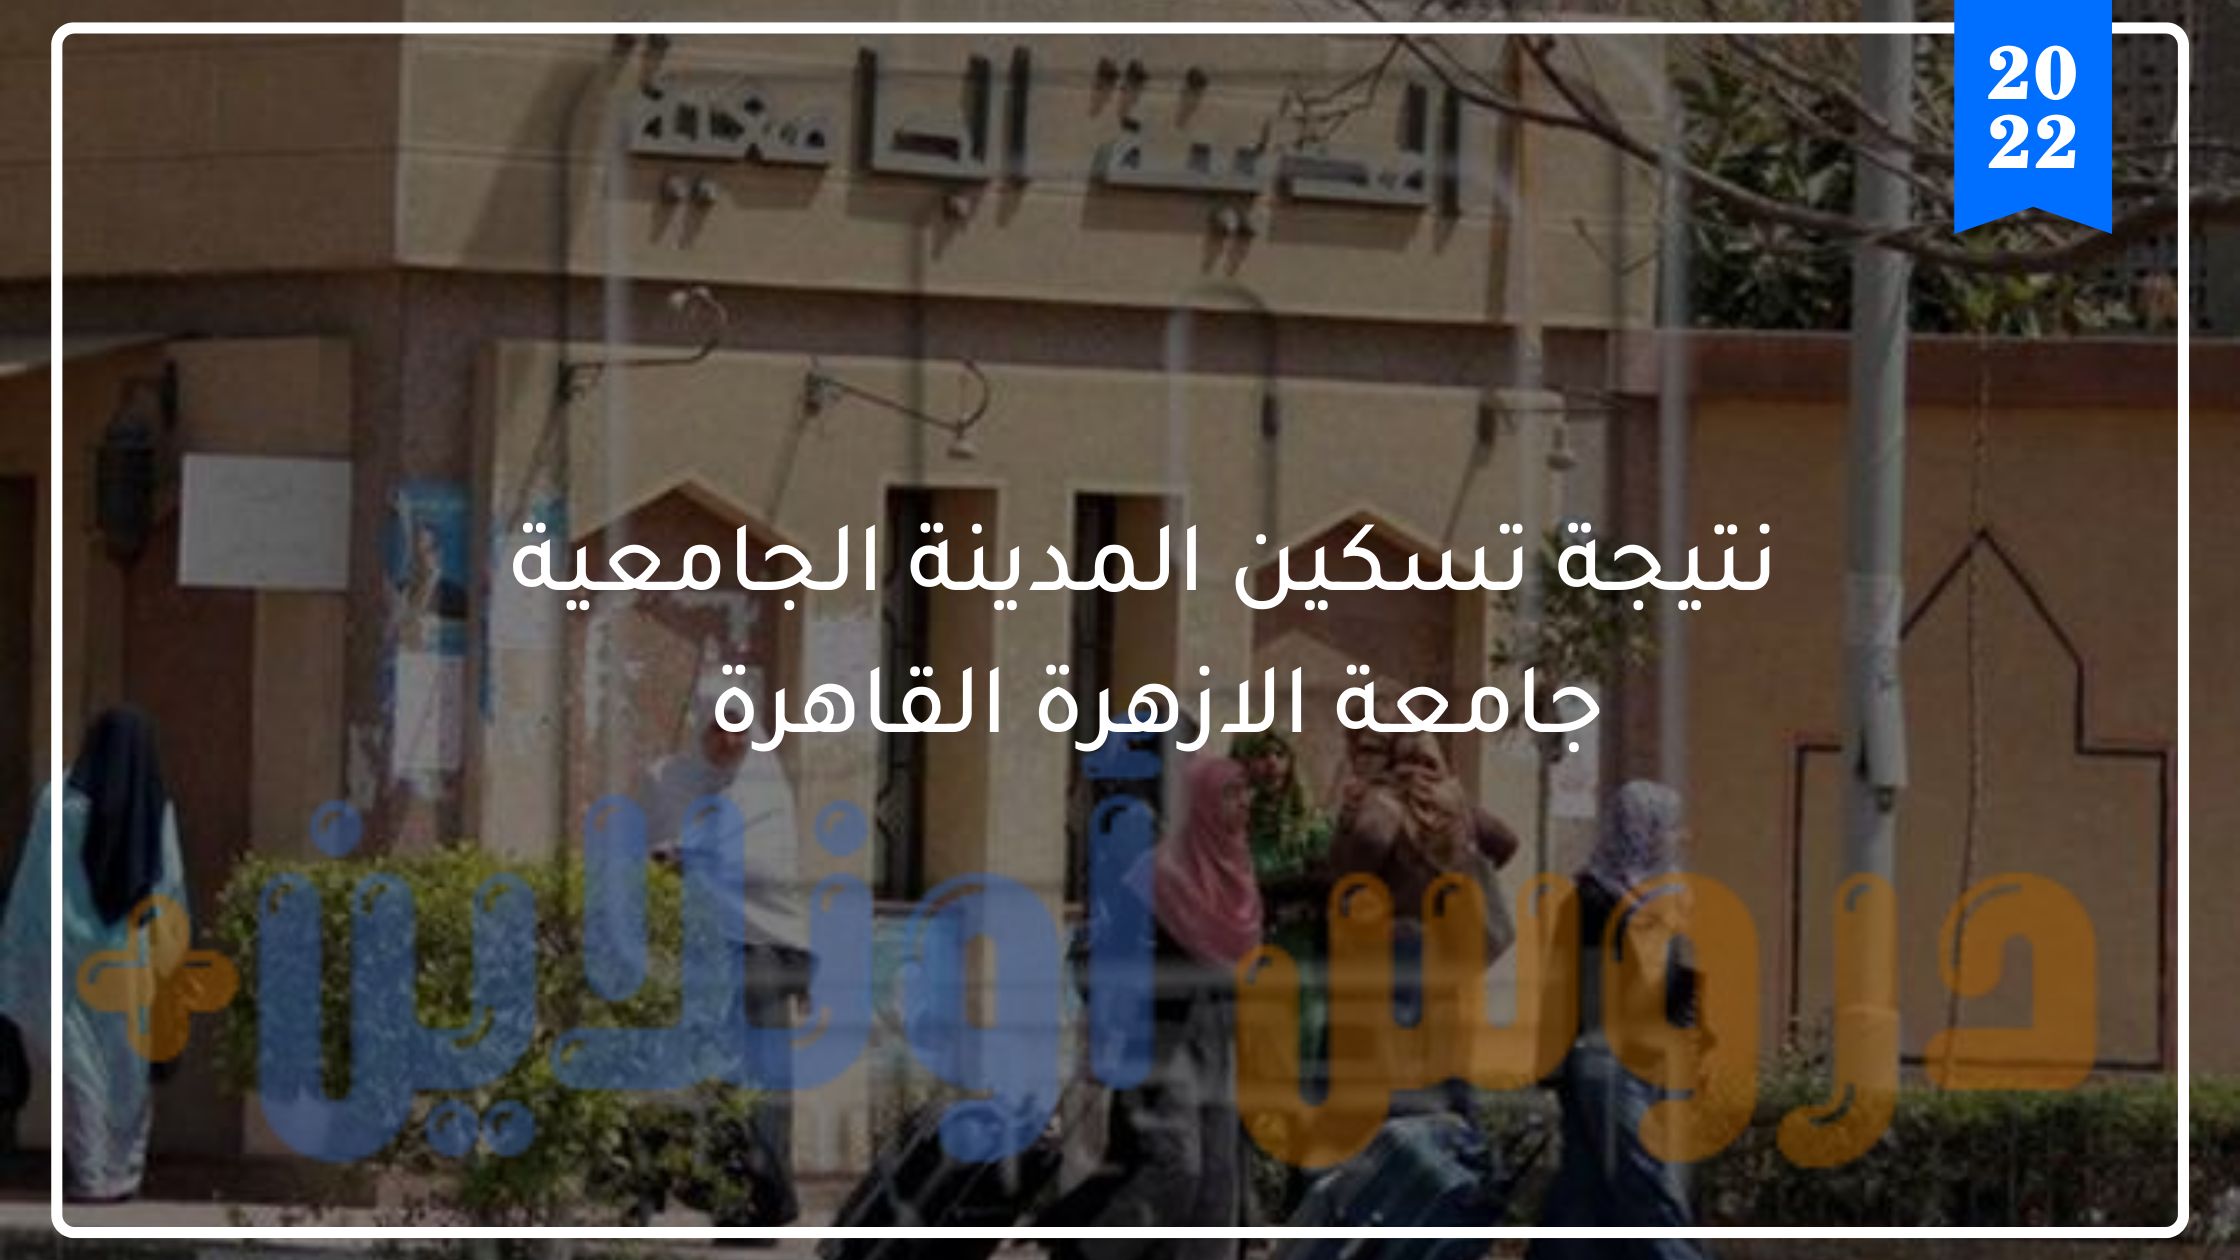 نتيجة تسكين المدينة الجامعية جامعة الازهرة القاهرة